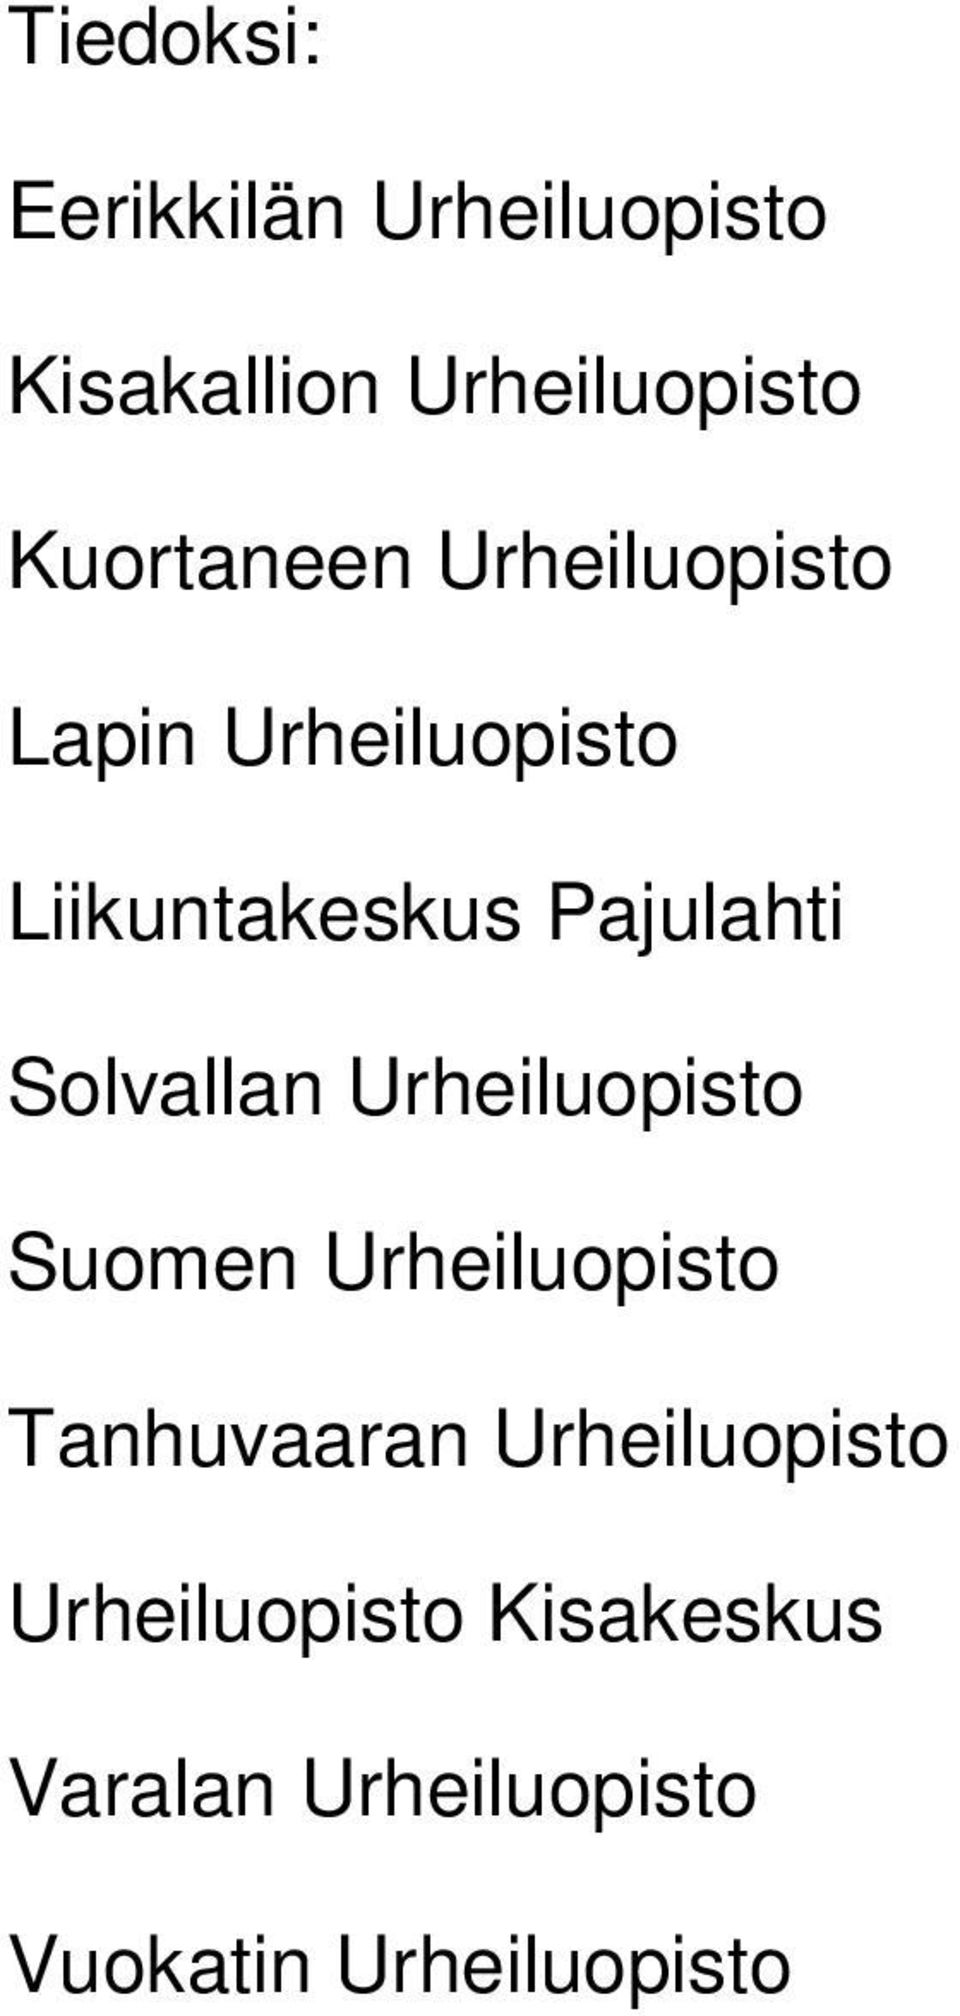 Pajulahti Solvallan Urheiluopisto Suomen Urheiluopisto Tanhuvaaran